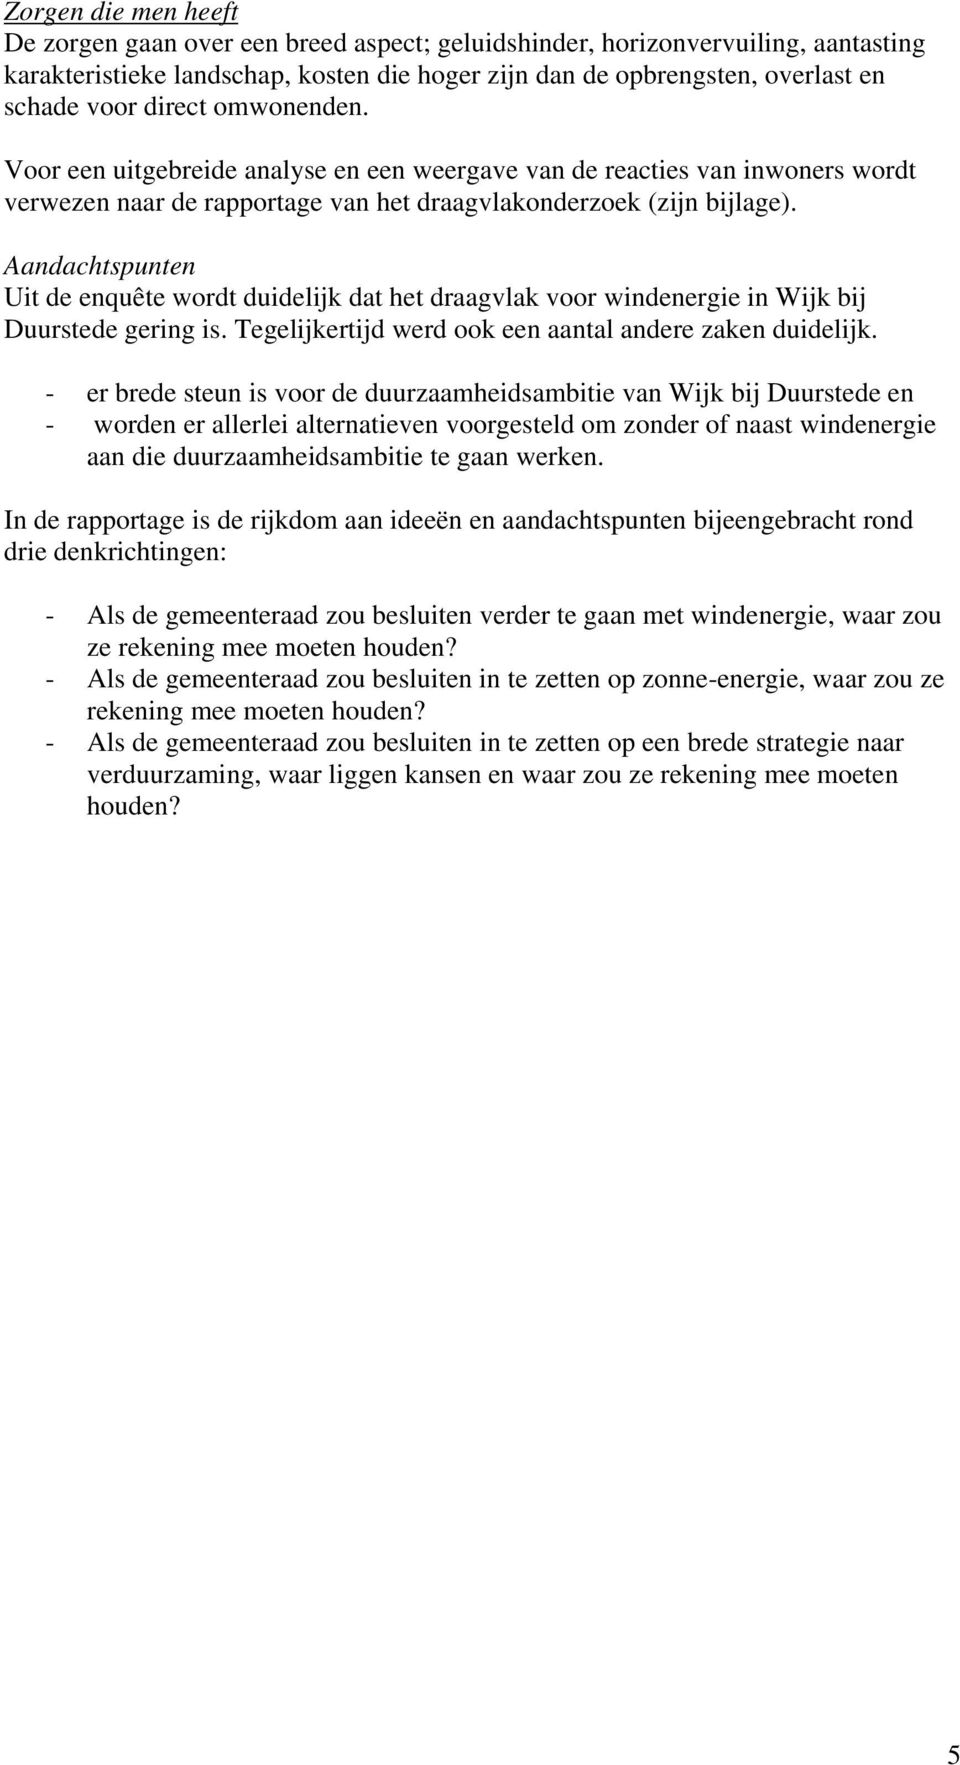 Aandachtspunten Uit de enquête wordt duidelijk dat het draagvlak voor windenergie in Wijk bij Duurstede gering is. Tegelijkertijd werd ook een aantal andere zaken duidelijk.